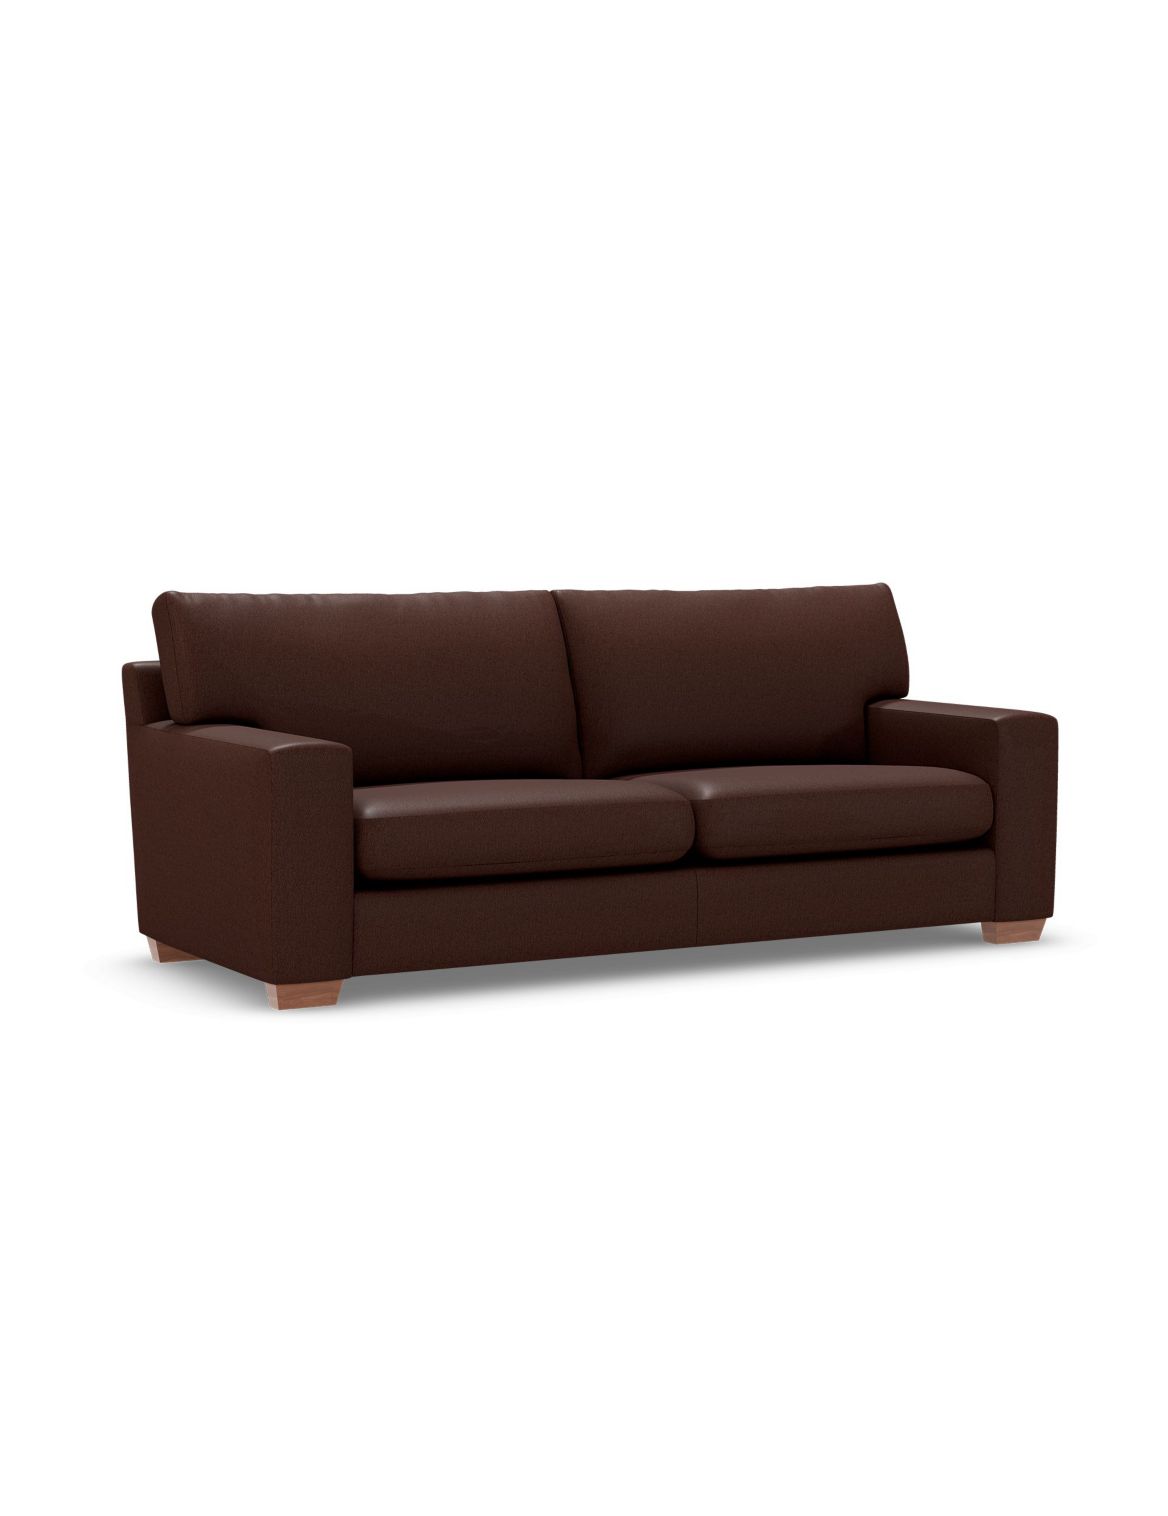 Alfie Large Sofa brown